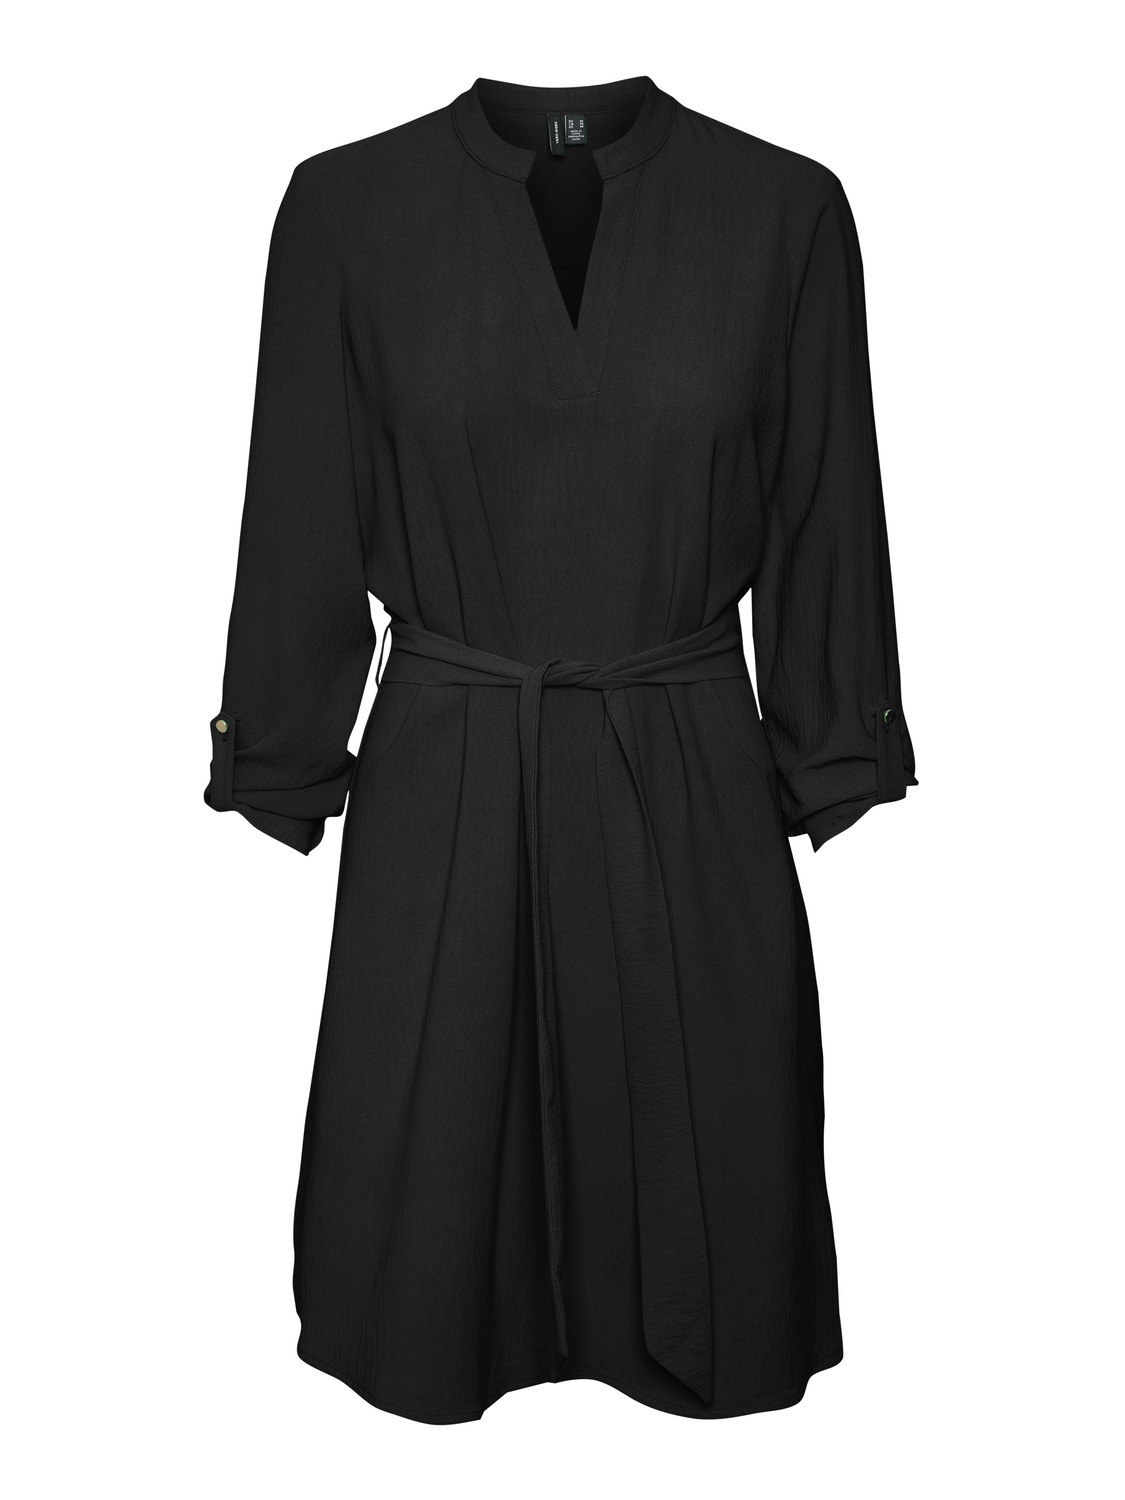 Vero Moda VMGAVINA Midi dress -Black - 10302327